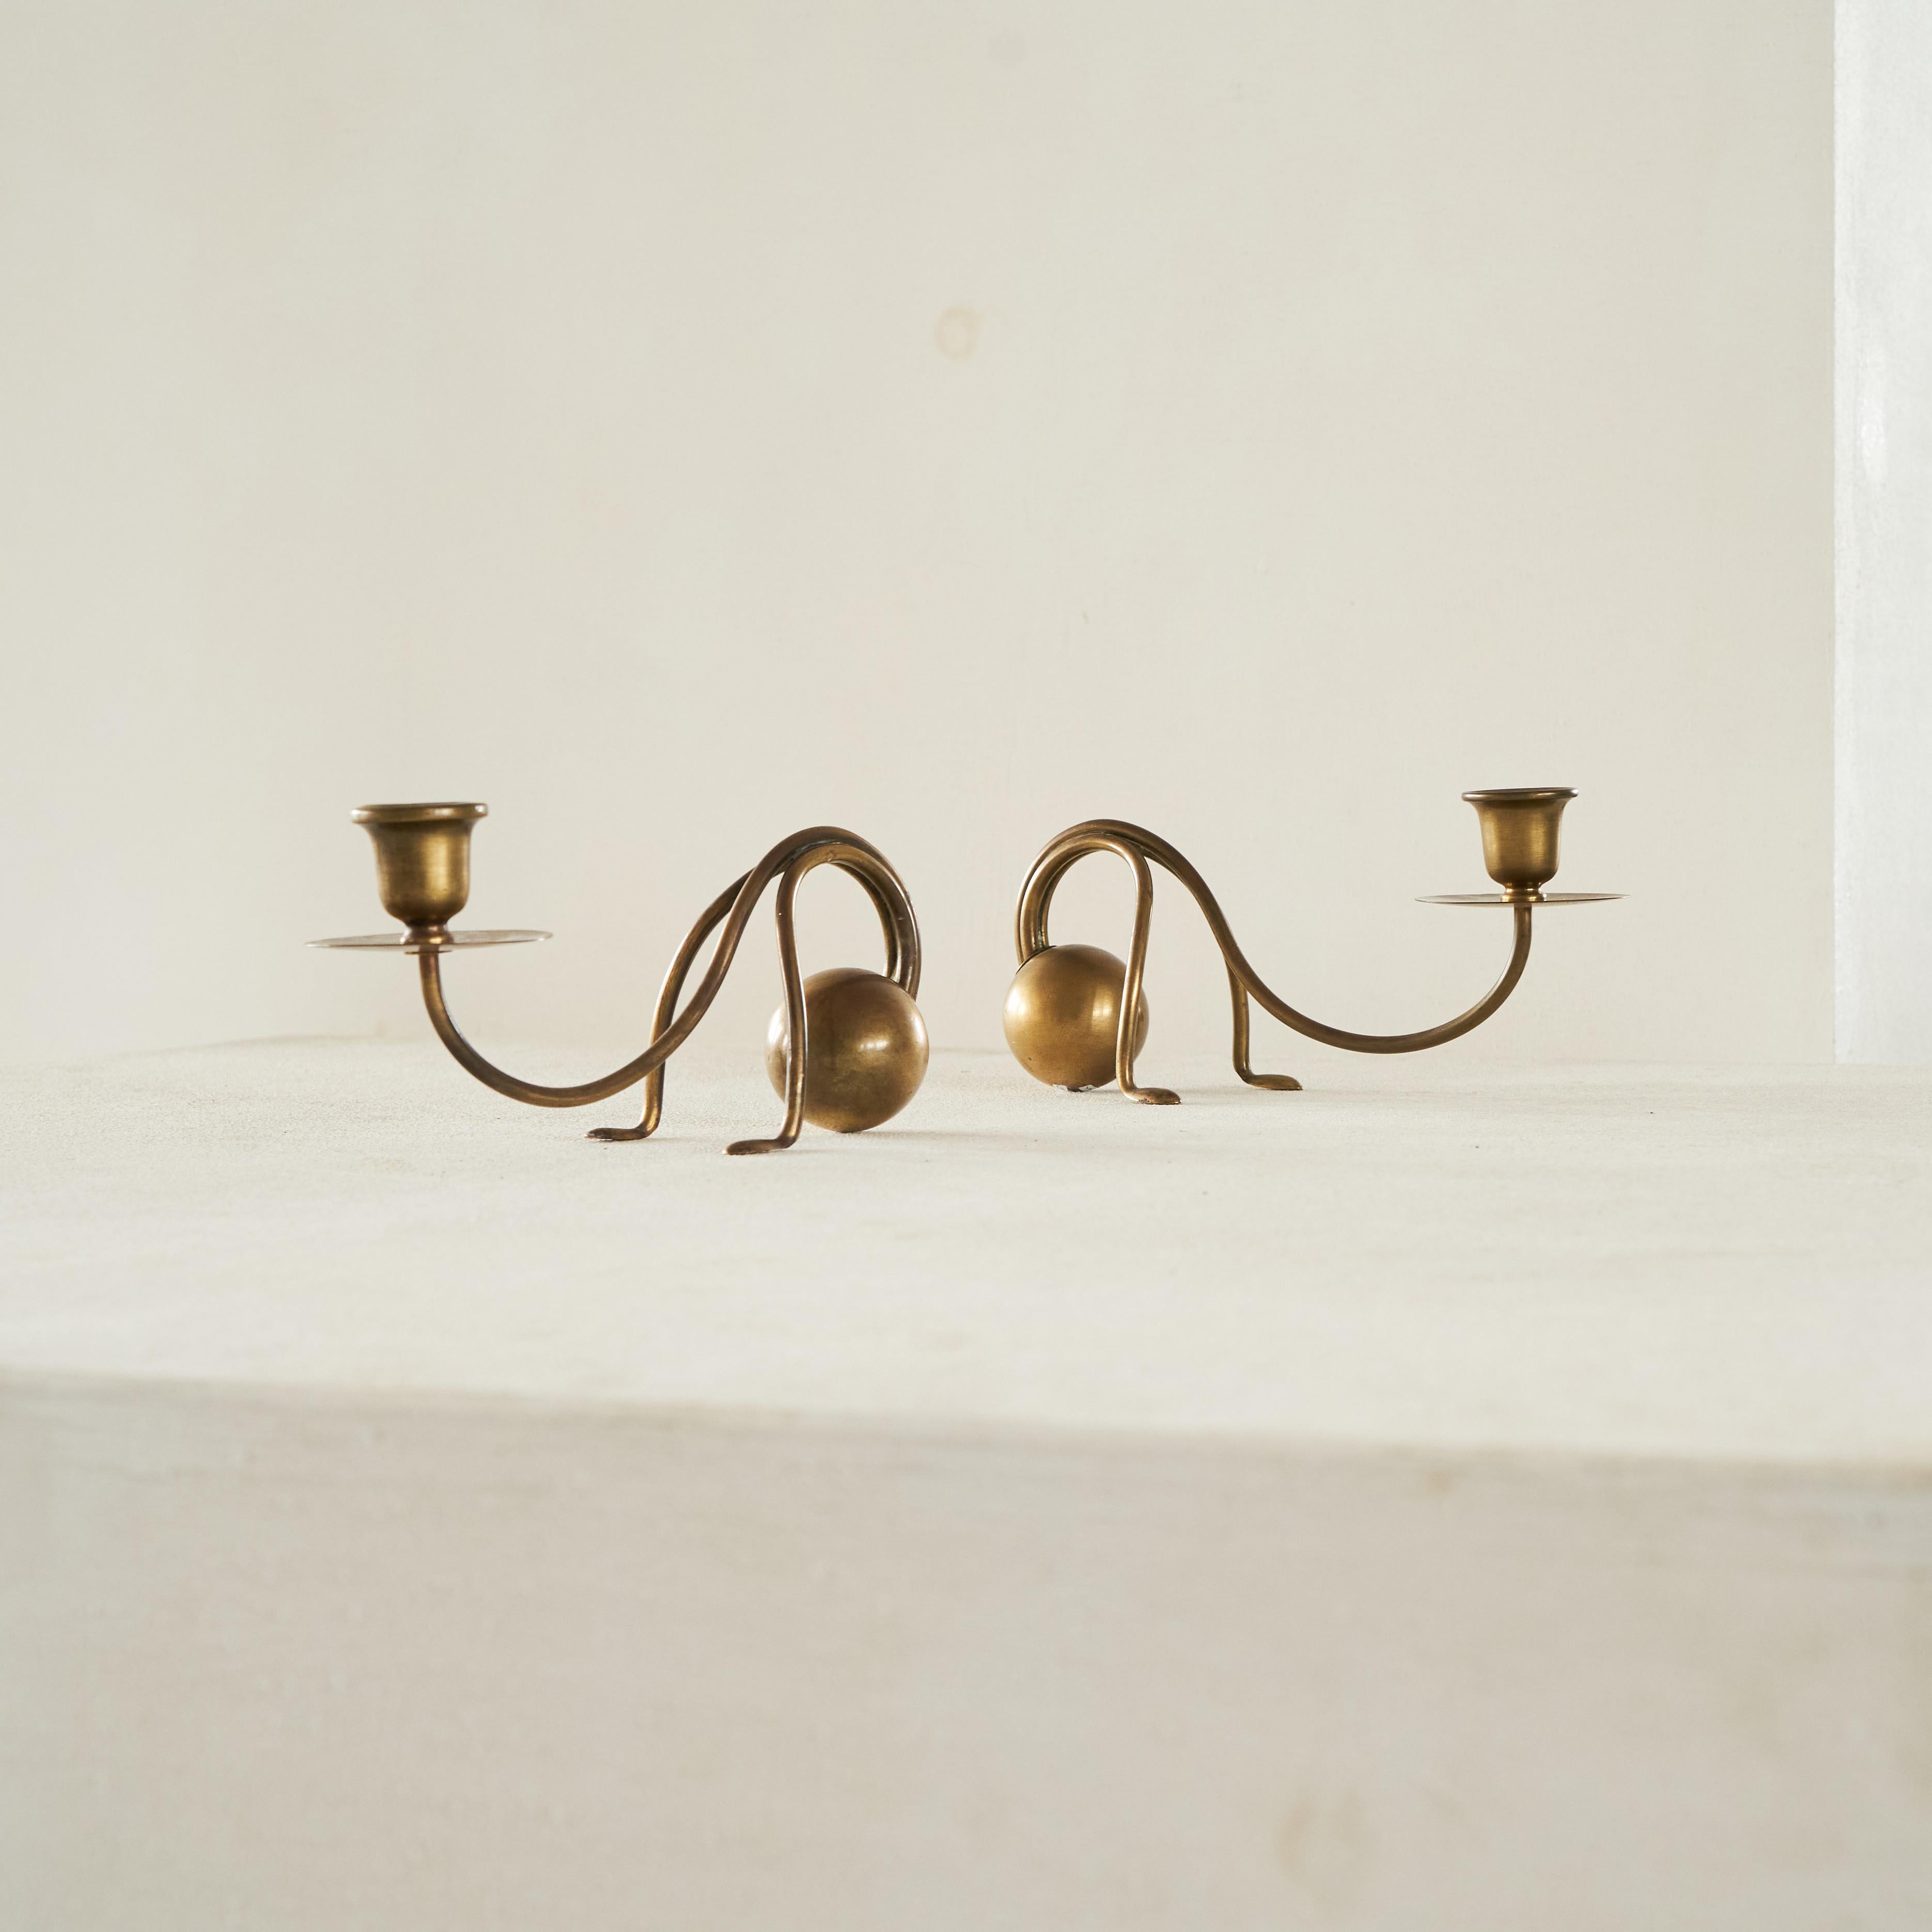 Paire de chandeliers à contrepoids Carl Deffner, Allemagne, années 1920.

Merveilleuse et amusante paire de chandeliers à contrepoids du célèbre artiste Carl Deffner d'Esslingen en Allemagne. Exécution au début du 20e siècle, très probablement dans